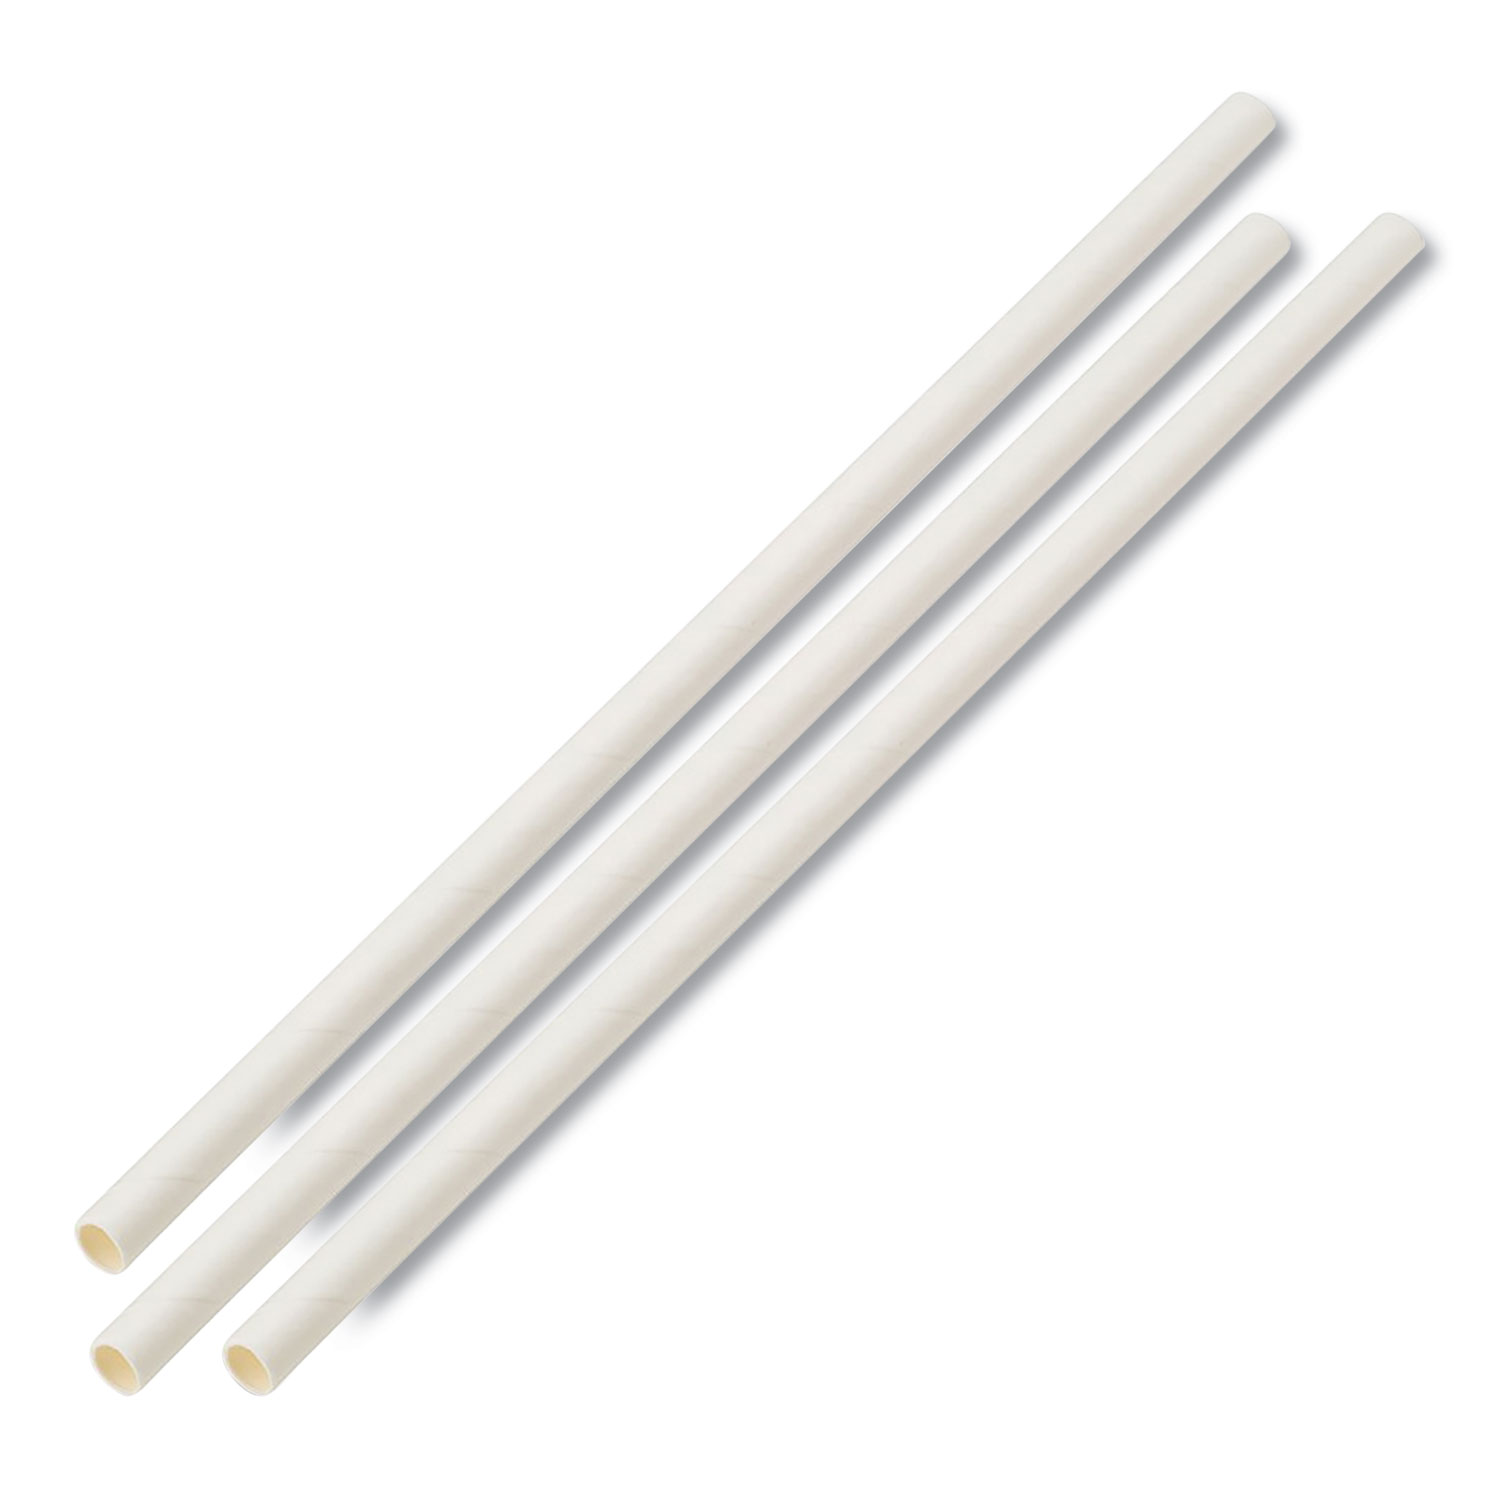  Boardwalk BWKPPRSTRWUW Unwrapped Paper Straws, 7 3/4 x 1/4 White, 4800 Straws/Carton (BWKPPRSTRWUW) 